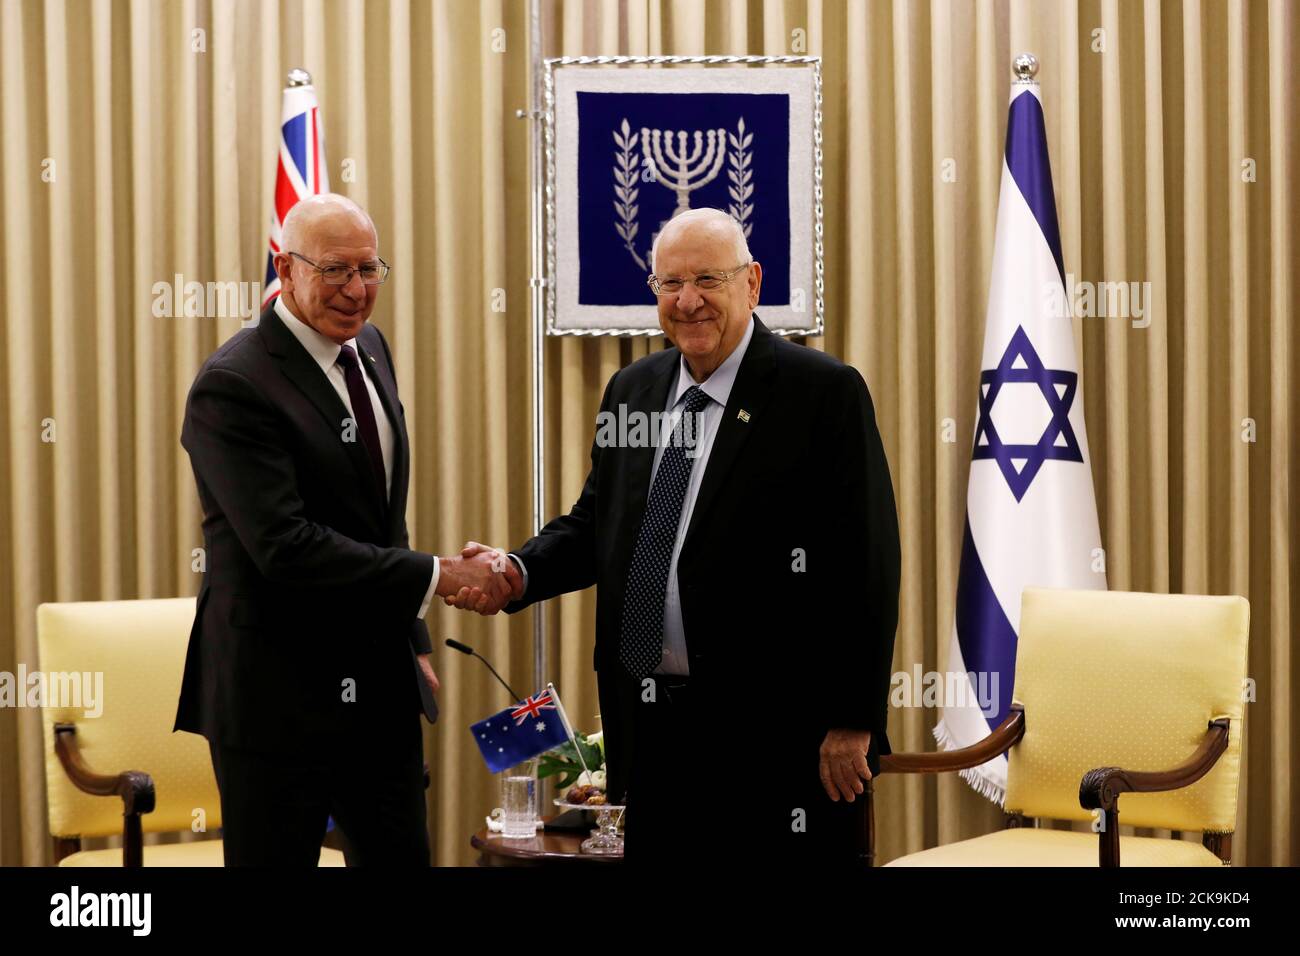 Le gouverneur général de l'Australie, David Hurley, et le président israélien, Reuven Rivlin, se serrent la main lors de leur réunion à Jérusalem le 21 janvier 2020. REUTERS/Ronen Zvulun Banque D'Images